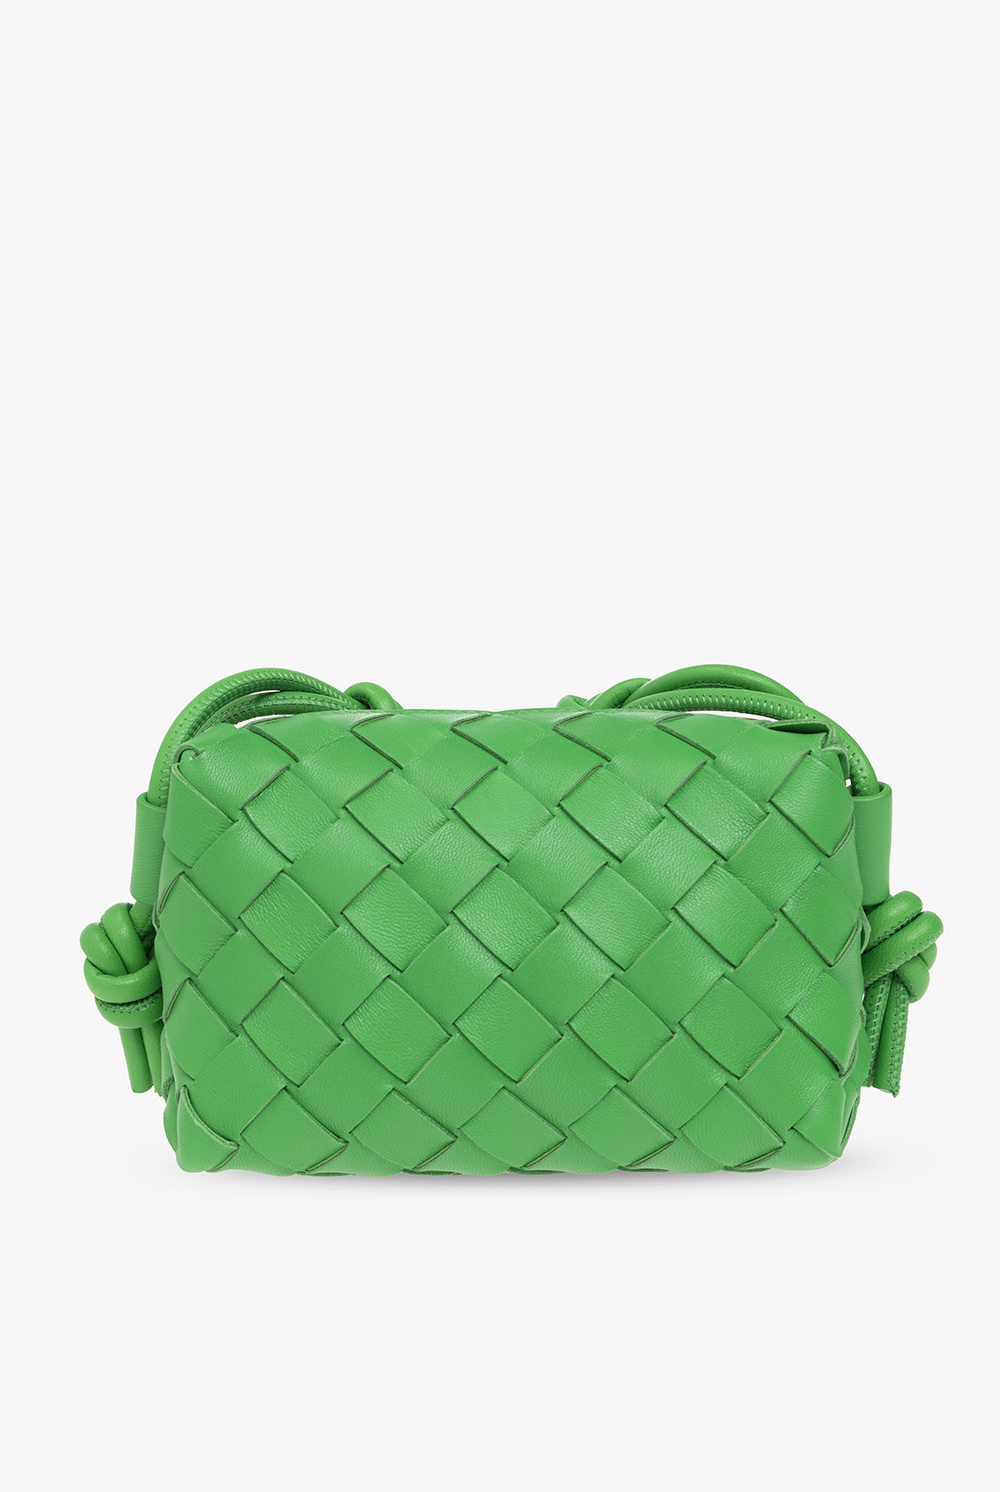 Bottega Veneta Candy Loop Bag in Green